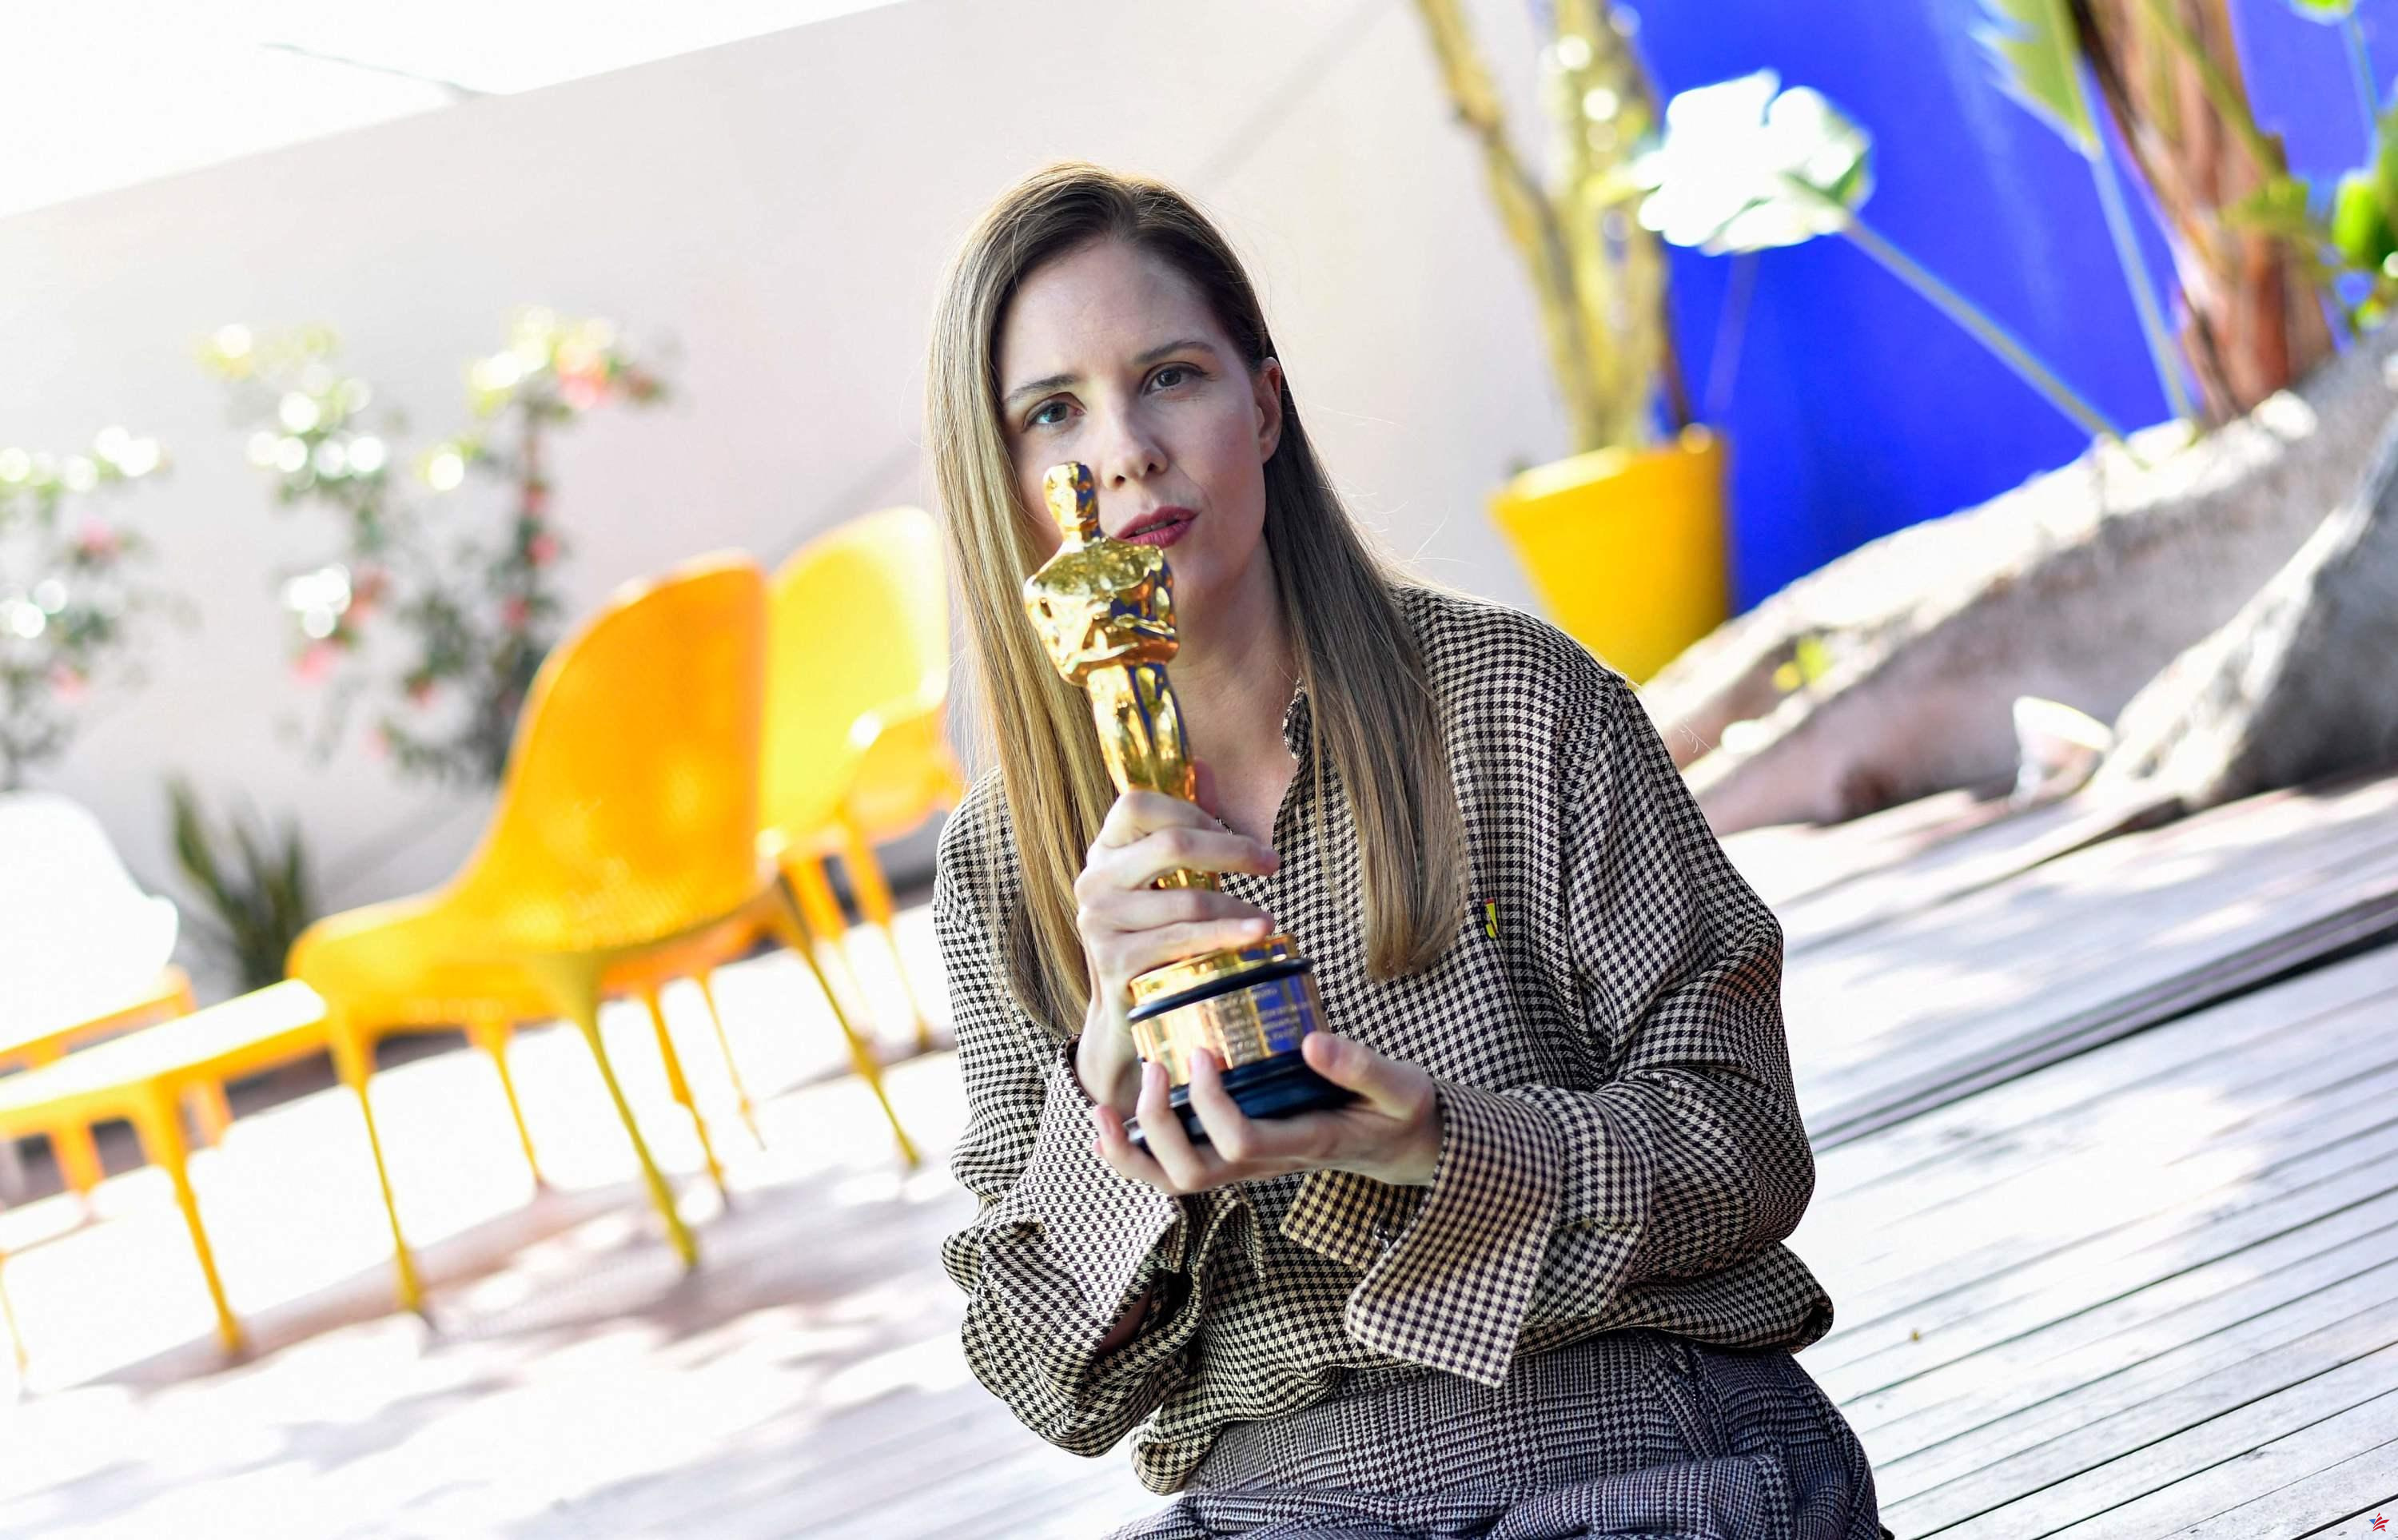 Para Justine Triet, tras su Oscar, las puertas de Hollywood “están abiertas”